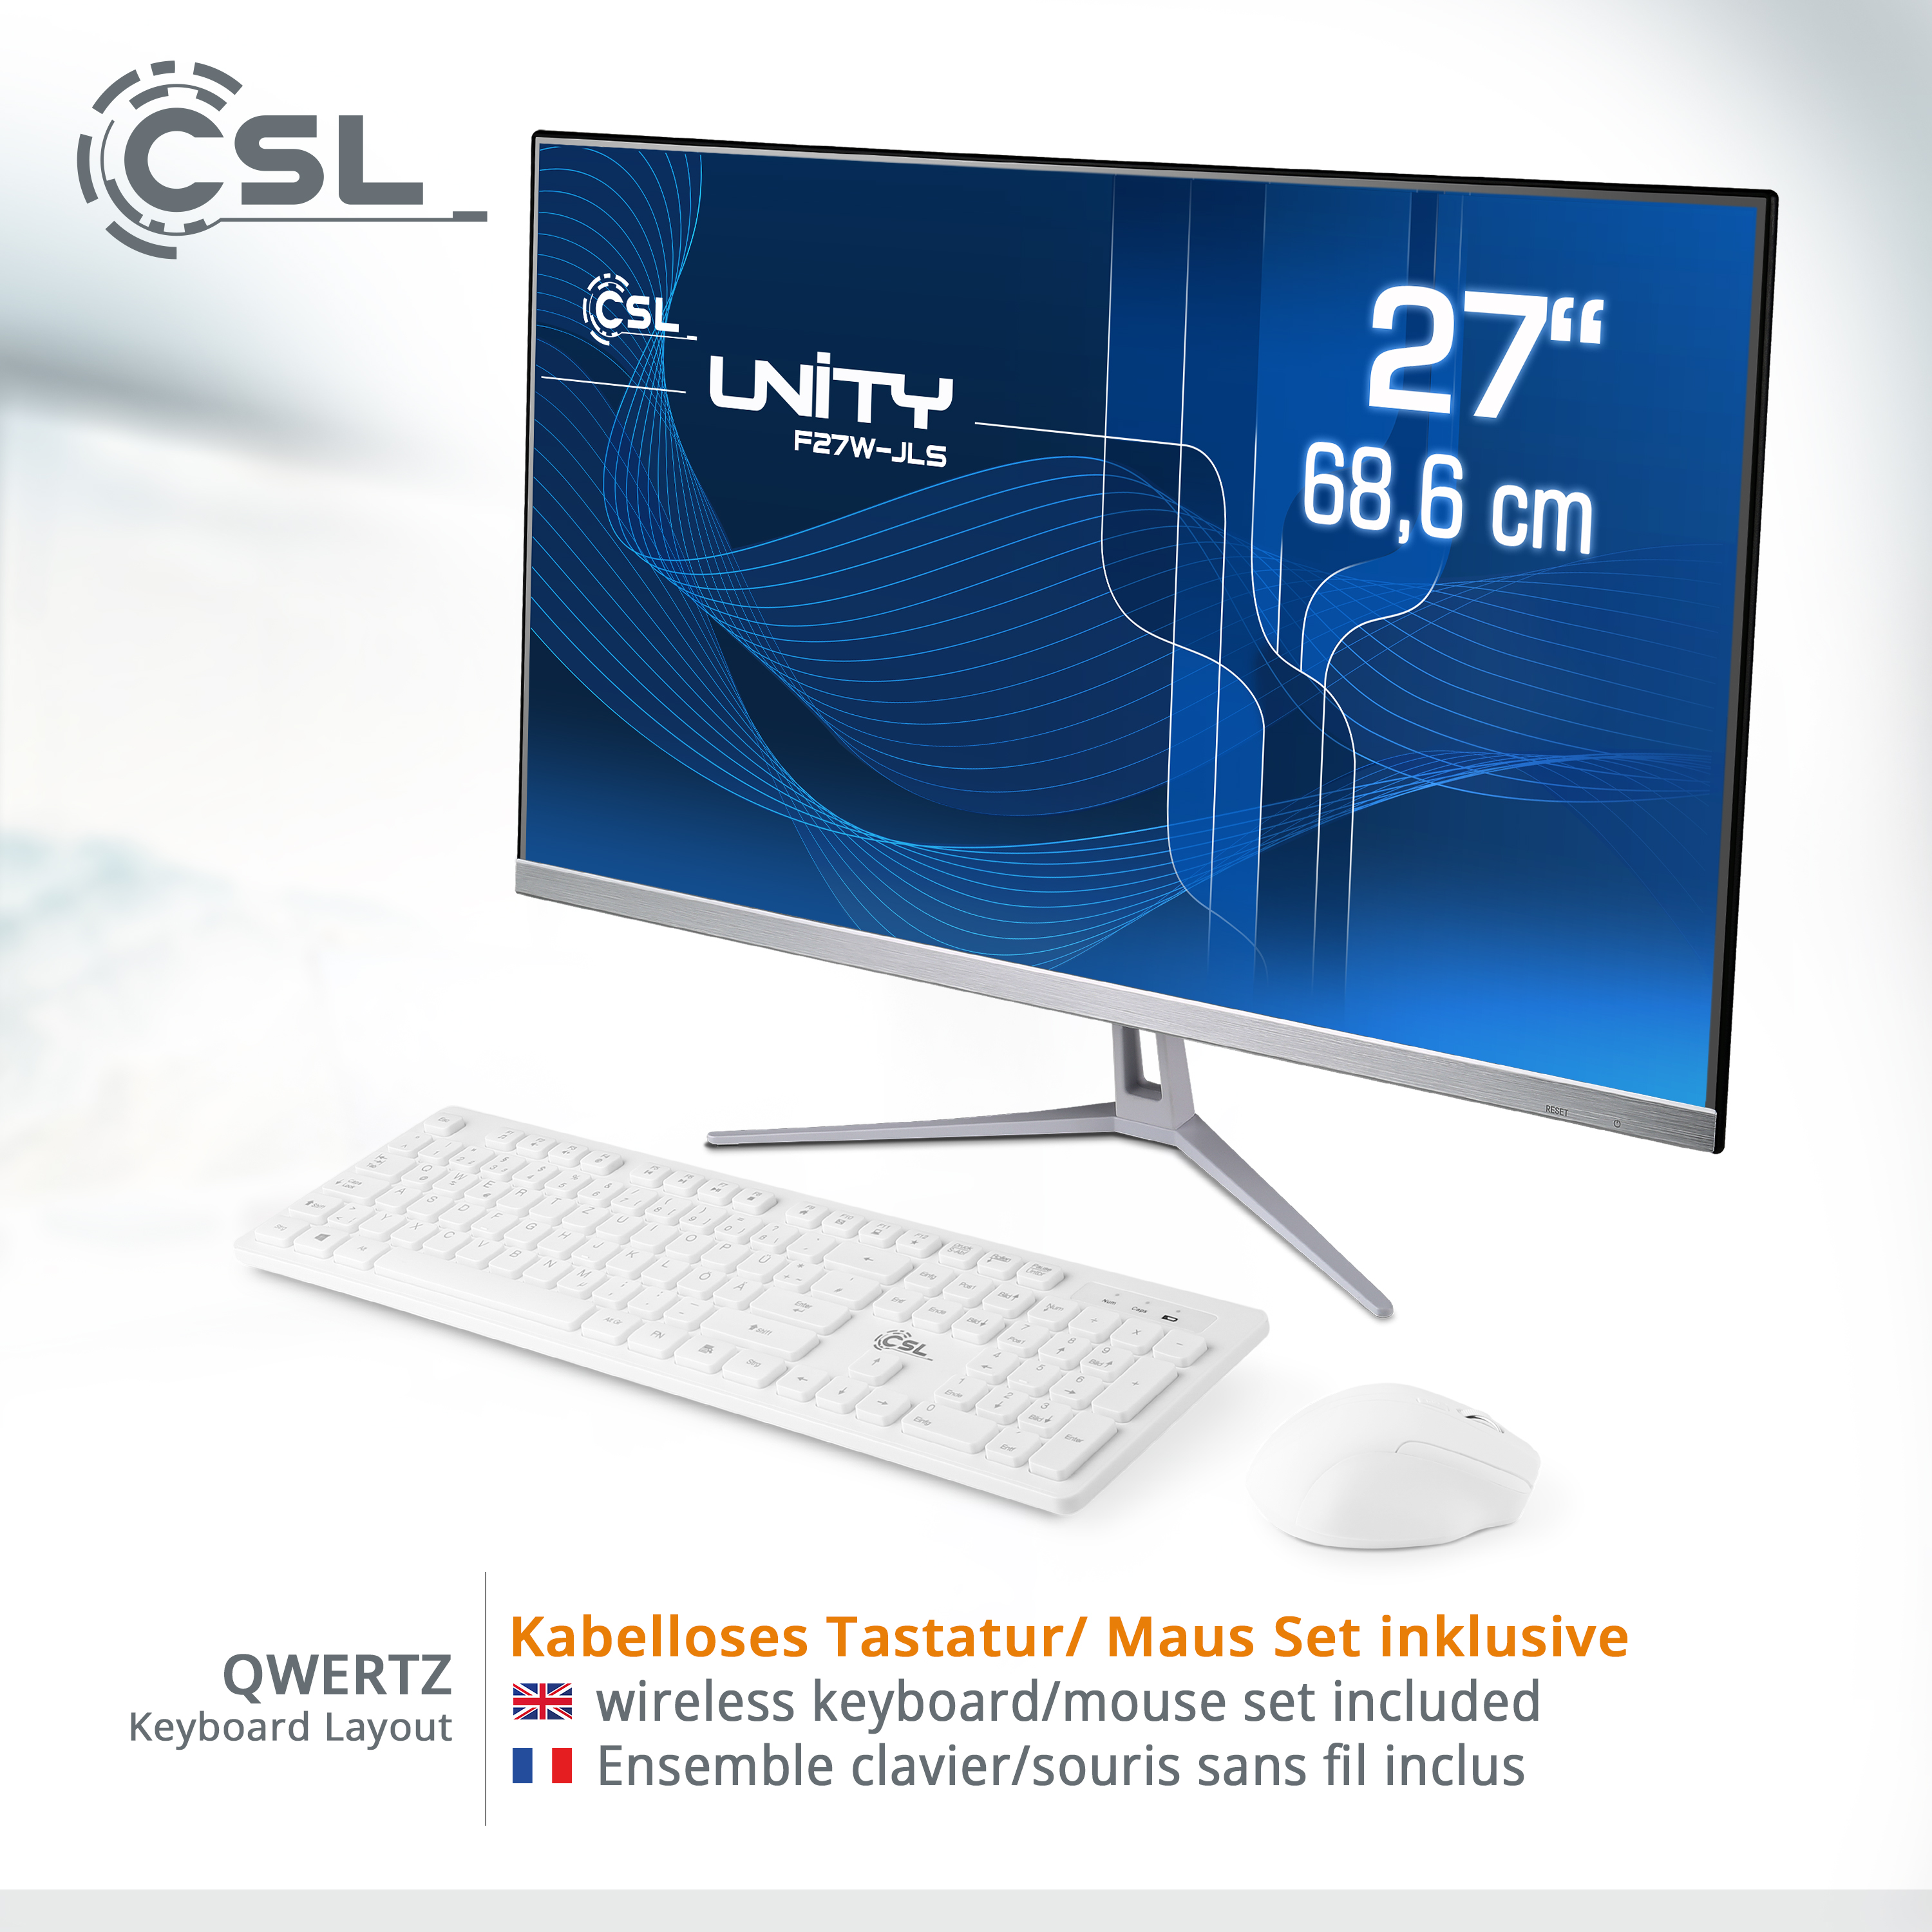 CSL Unity F27W-JLS RAM 2000 Display, 2000 All-in-One-PC weiß mit SSD, Pro, Win 8 RAM, GB Pentium Intel® 8 Zoll / 27 11 UHD Graphics, GB GB / / GB